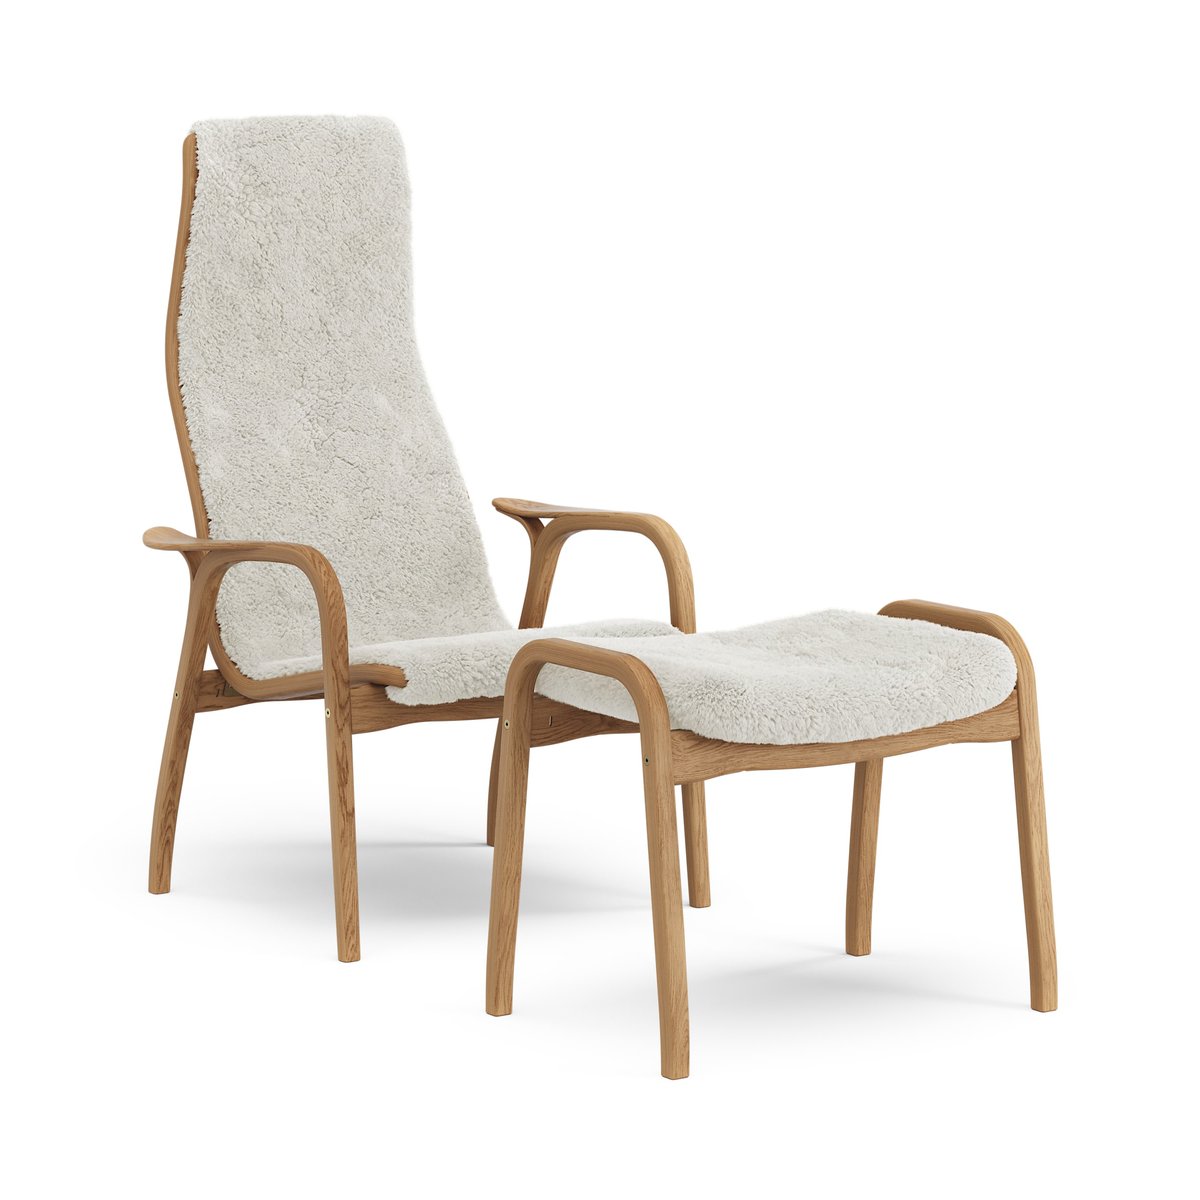 Swedese Lamino fauteuil en voetenbankje geolied eiken/schapenvacht Offwhite (wit)